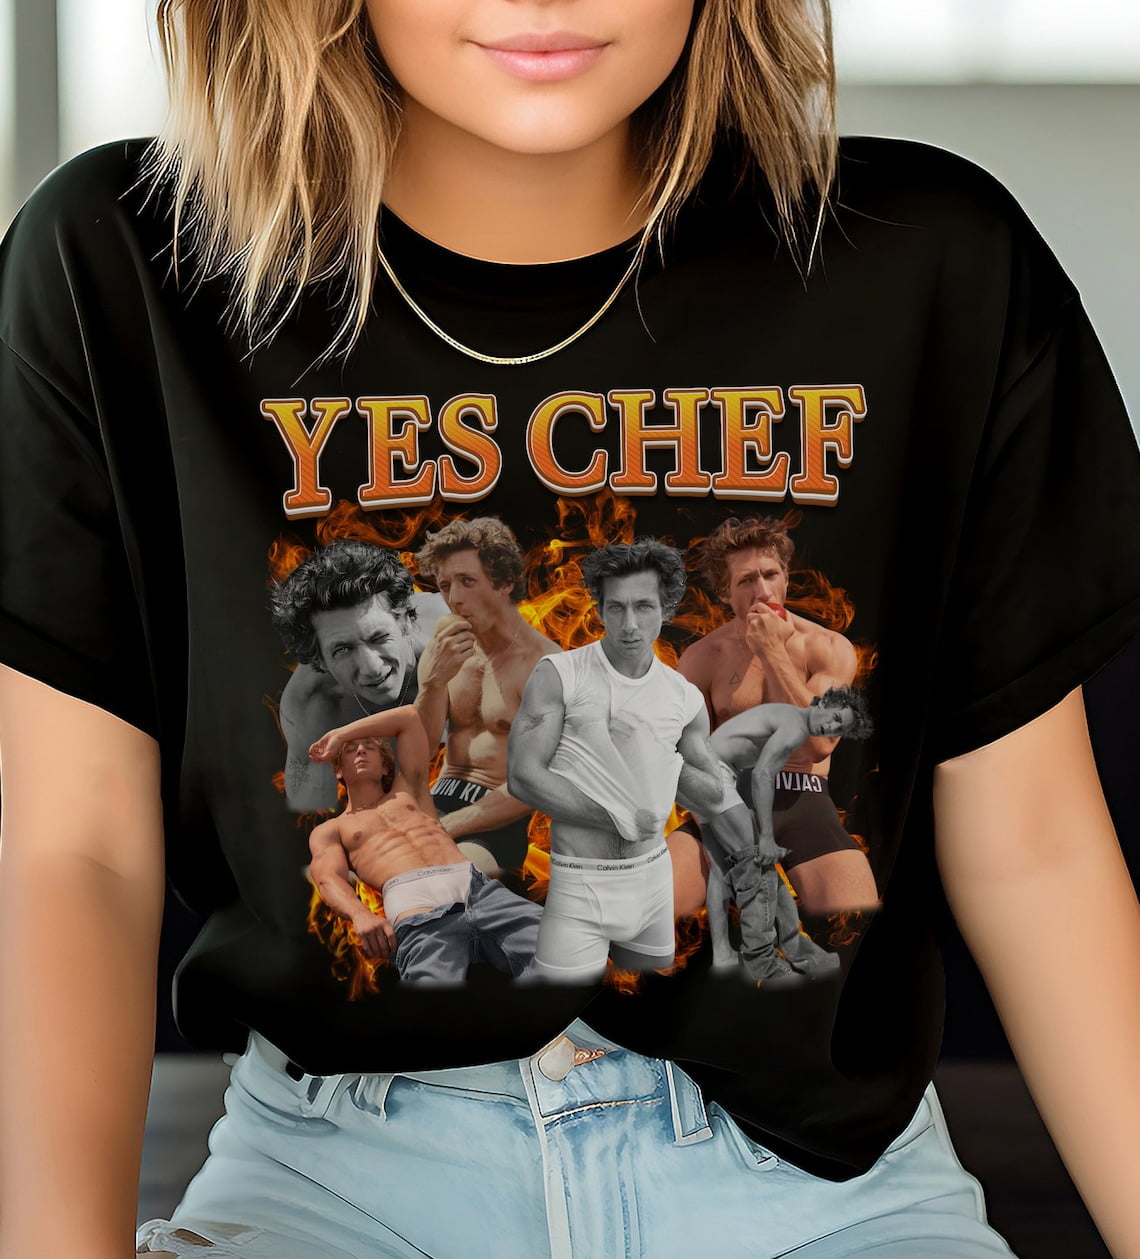 Jeremy Allen White Calvin Klein Yes Chef shirt tshirt 90s bootleg retro ...